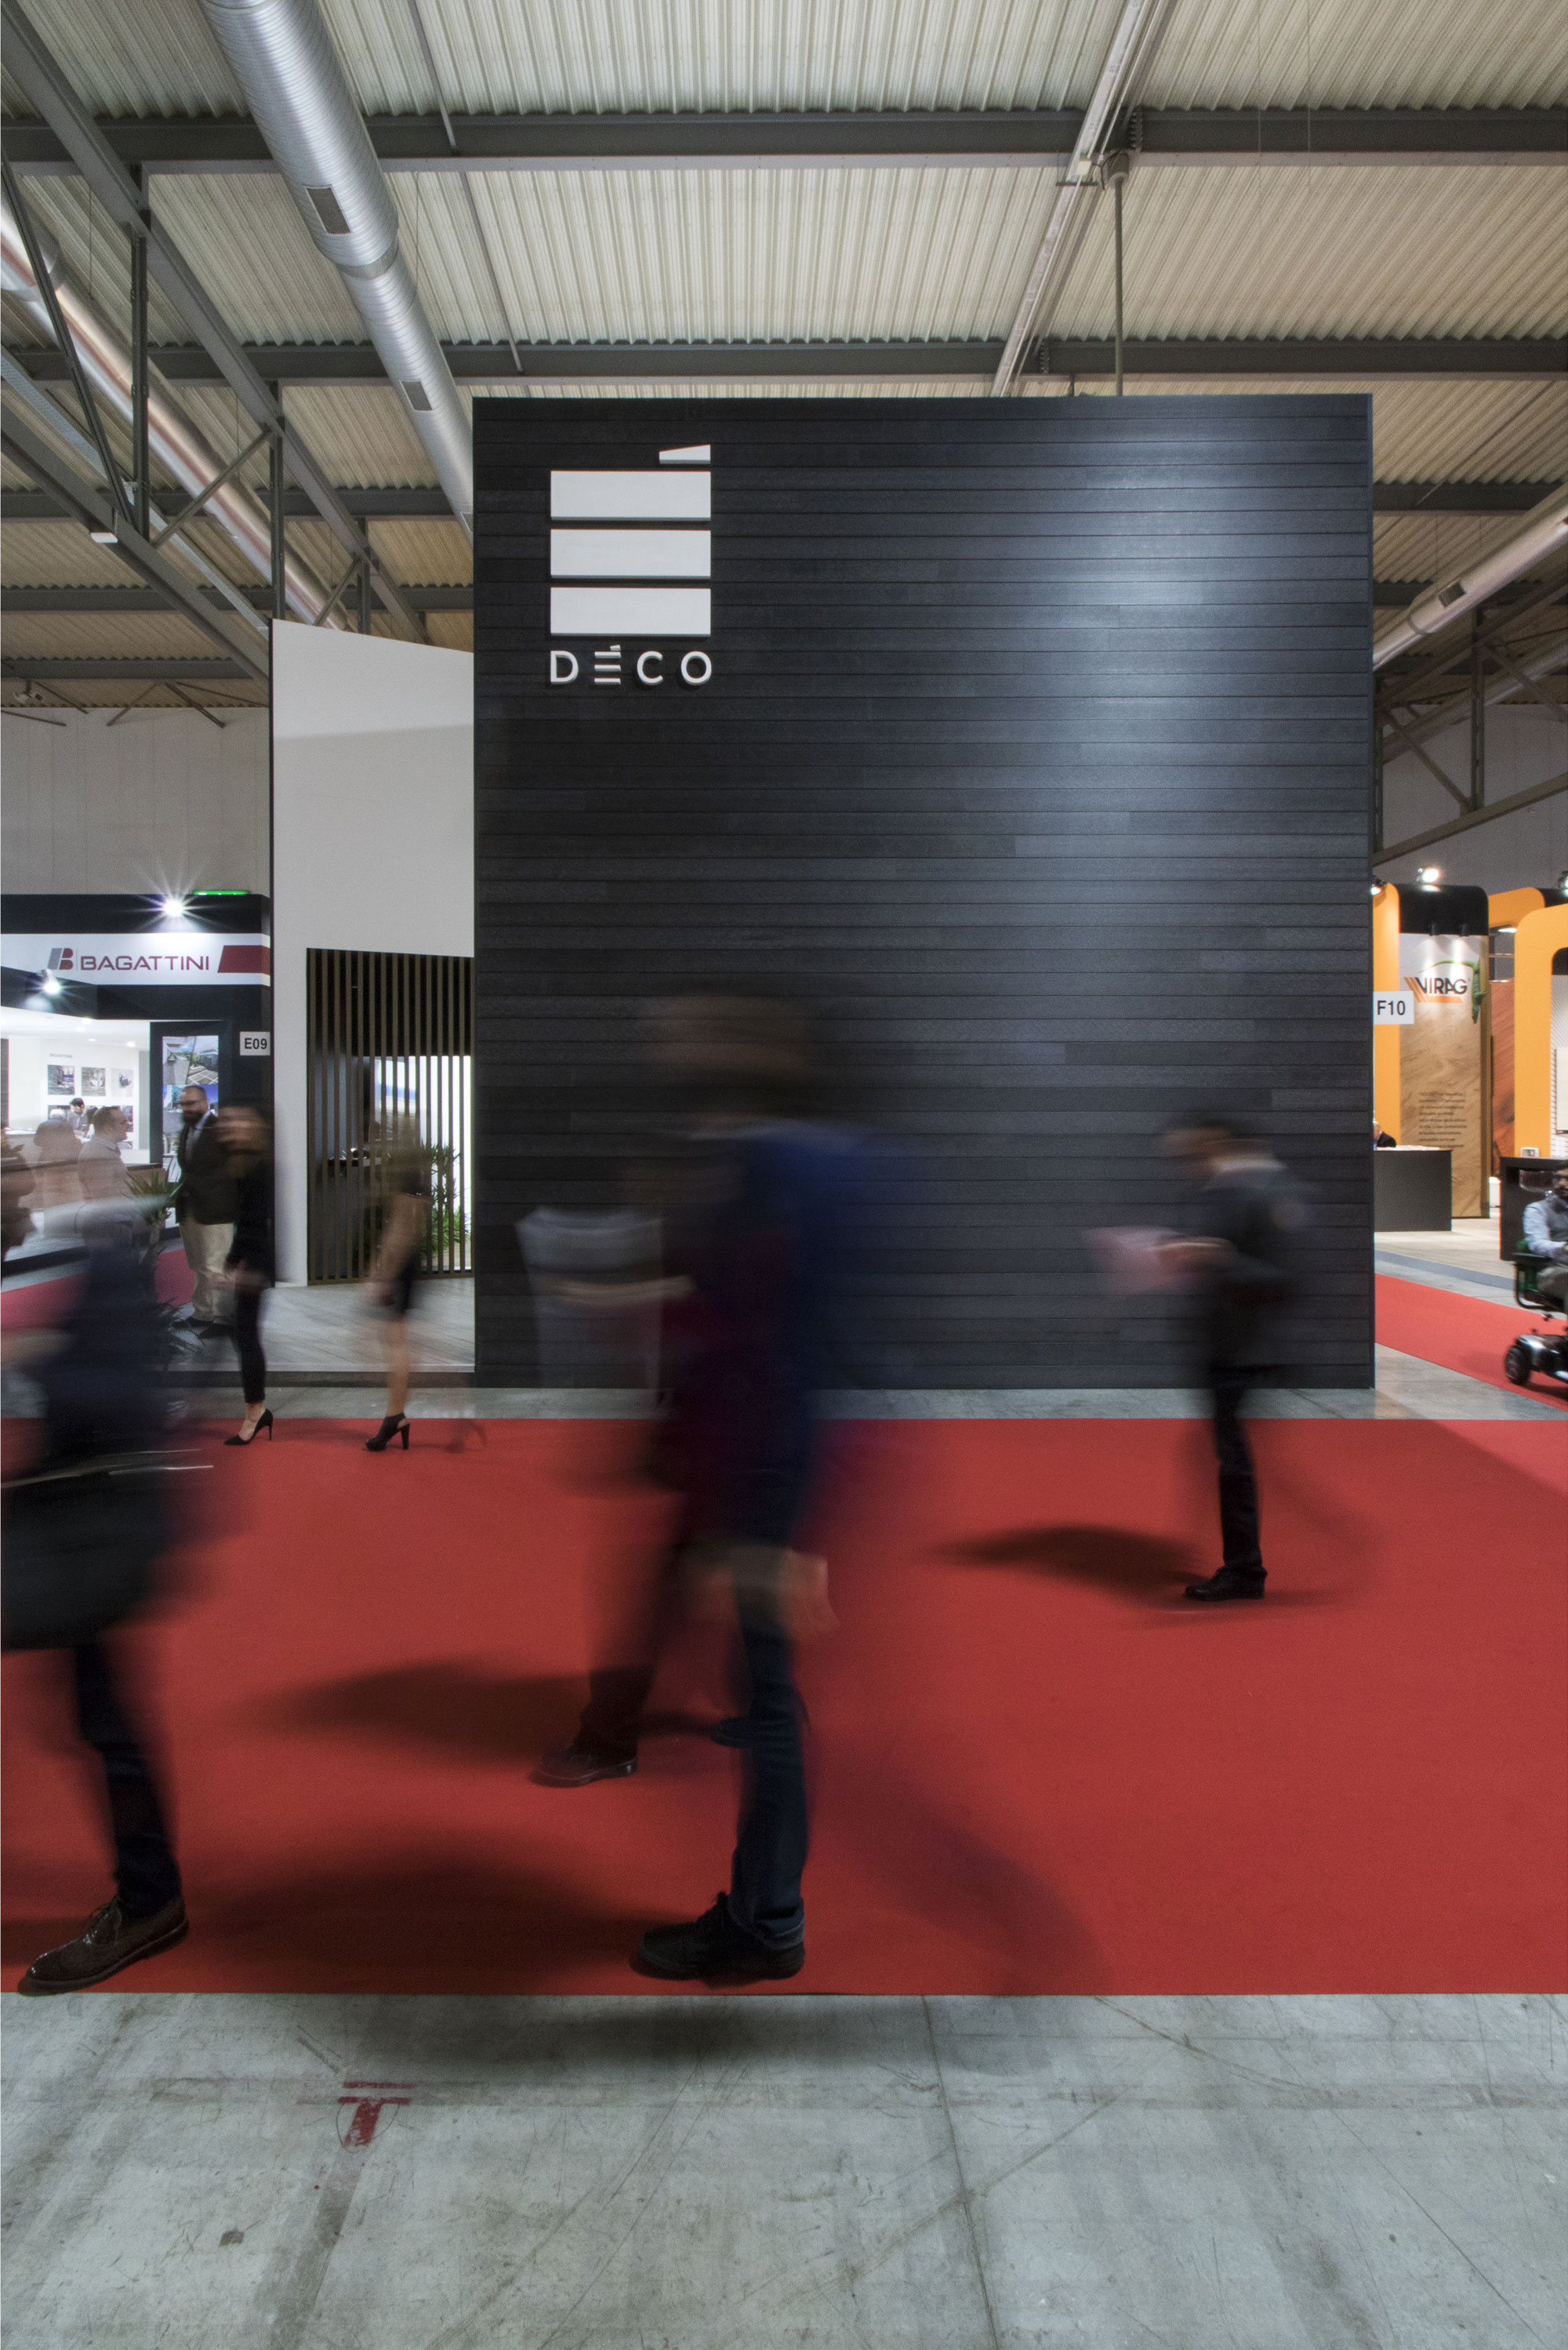 Deco exhibition stand interior design and architecture